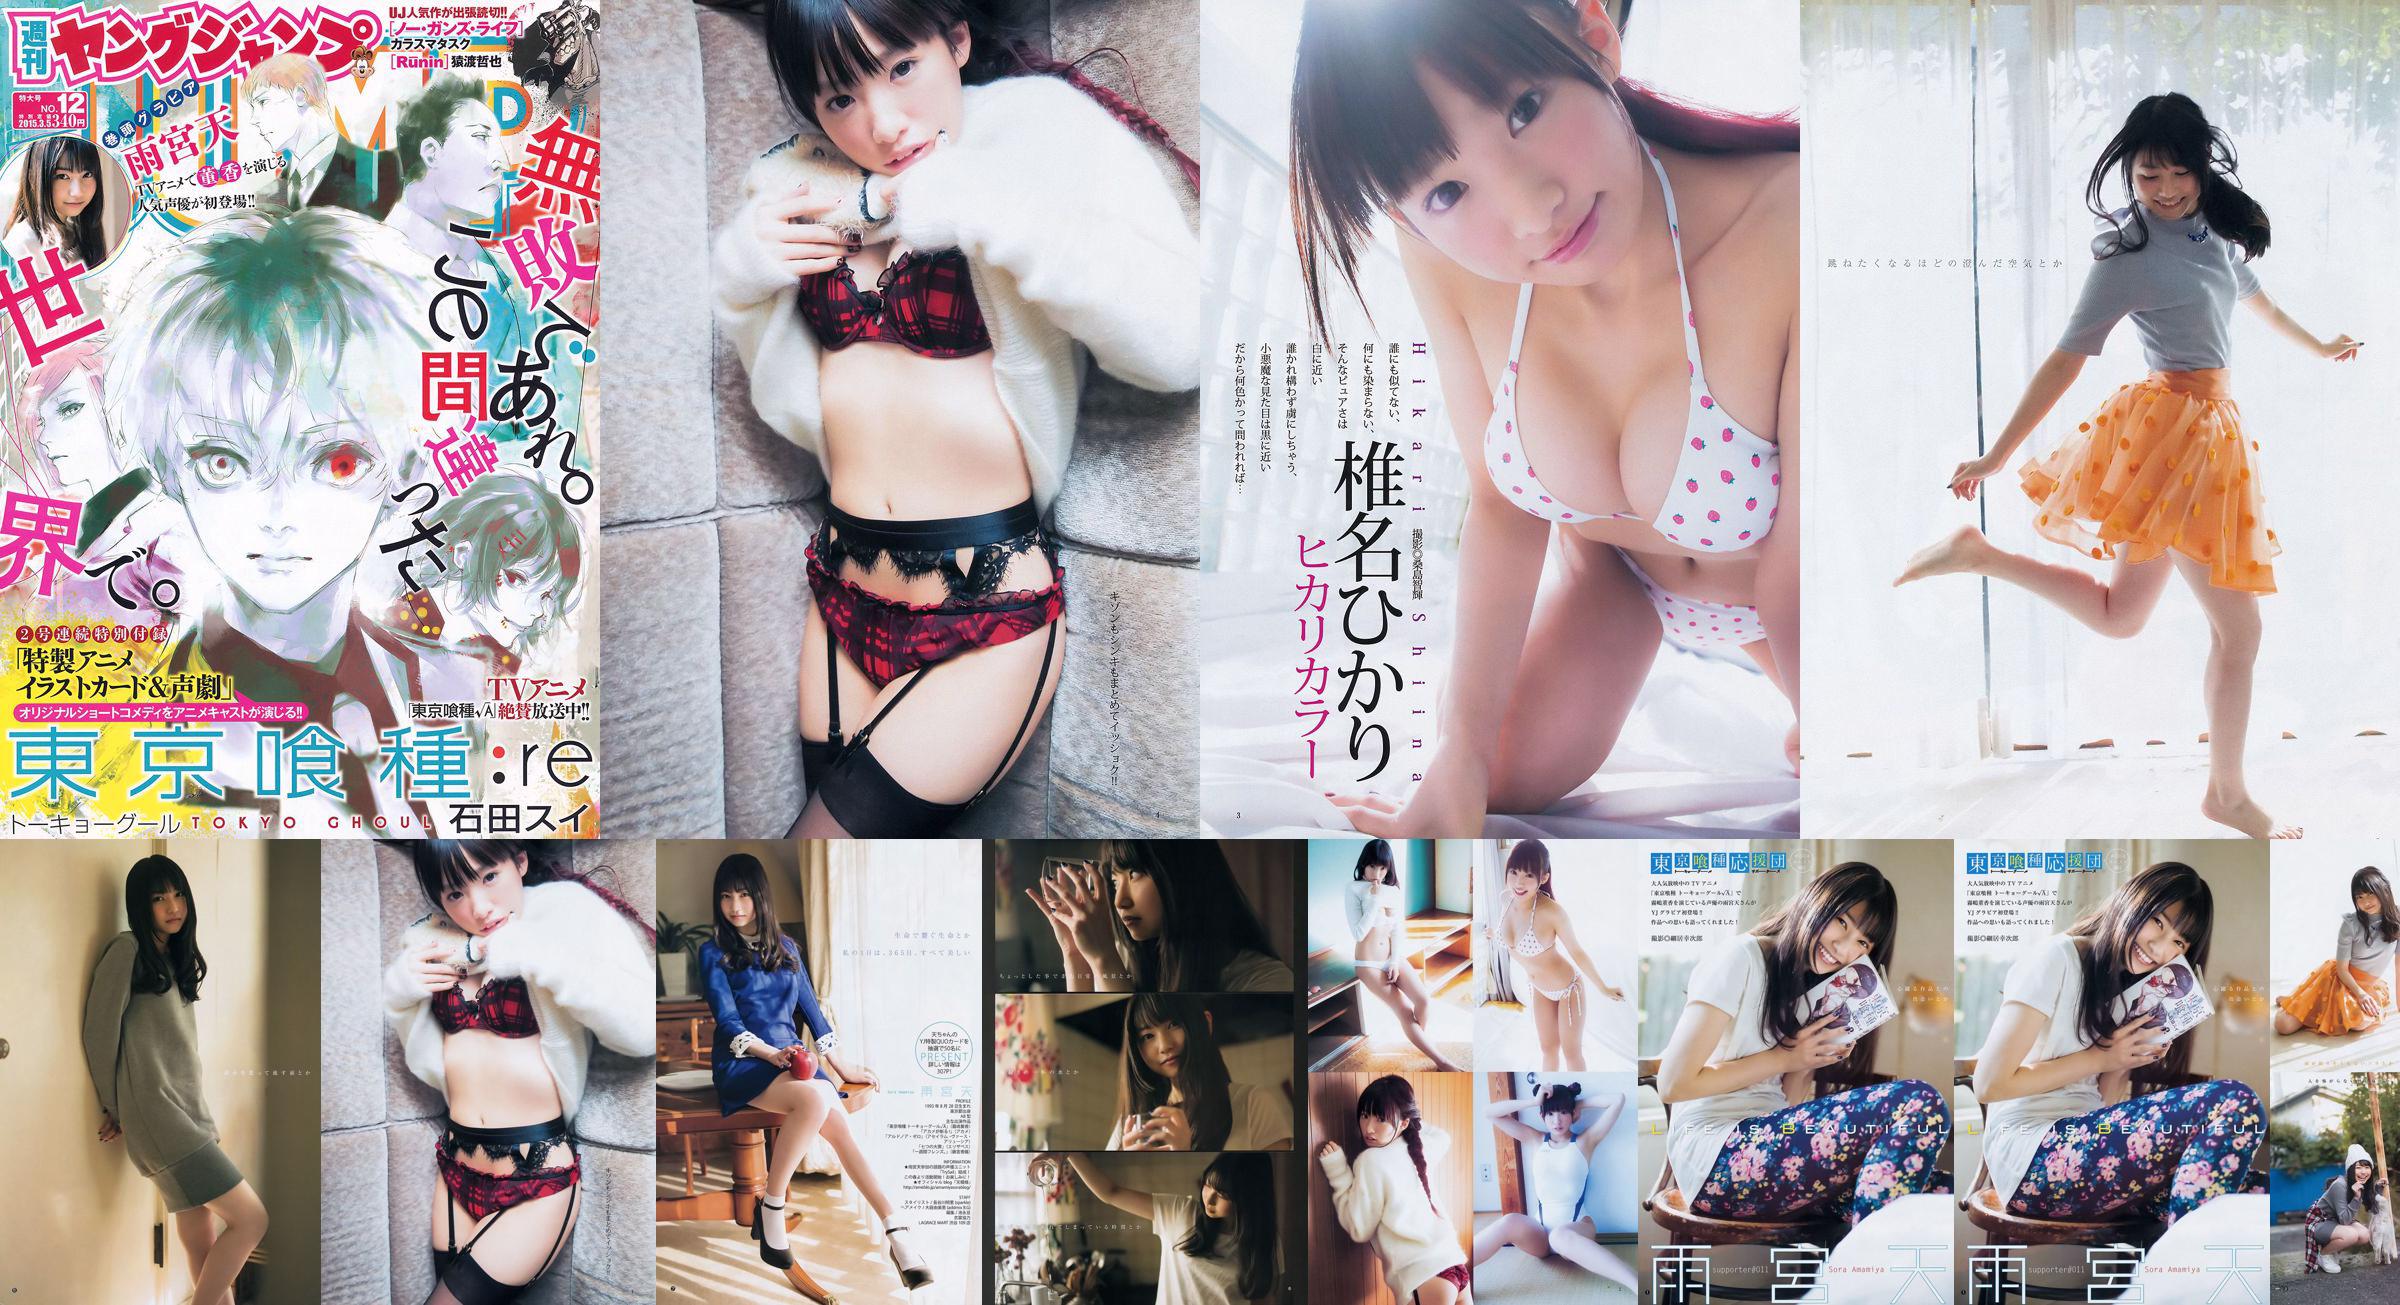 Amamiya Tian Shiina ひかり [Weekly Young Jump] 2015 No.12 Photo Magazine No.3991bd Página 4